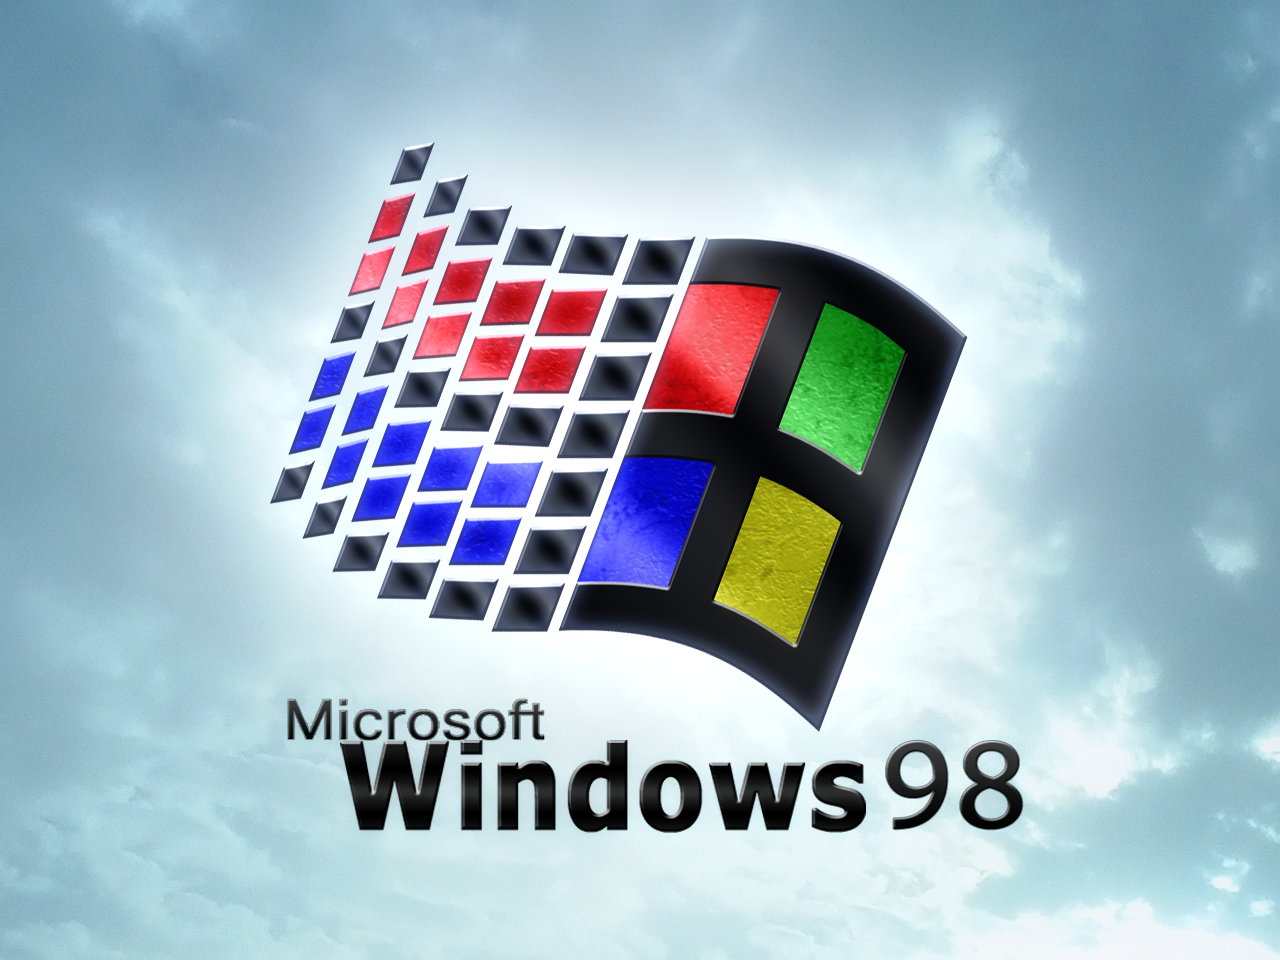 Fåen Nostalgisk Känsla Av Windows 98 Med Denna Klassiska Design